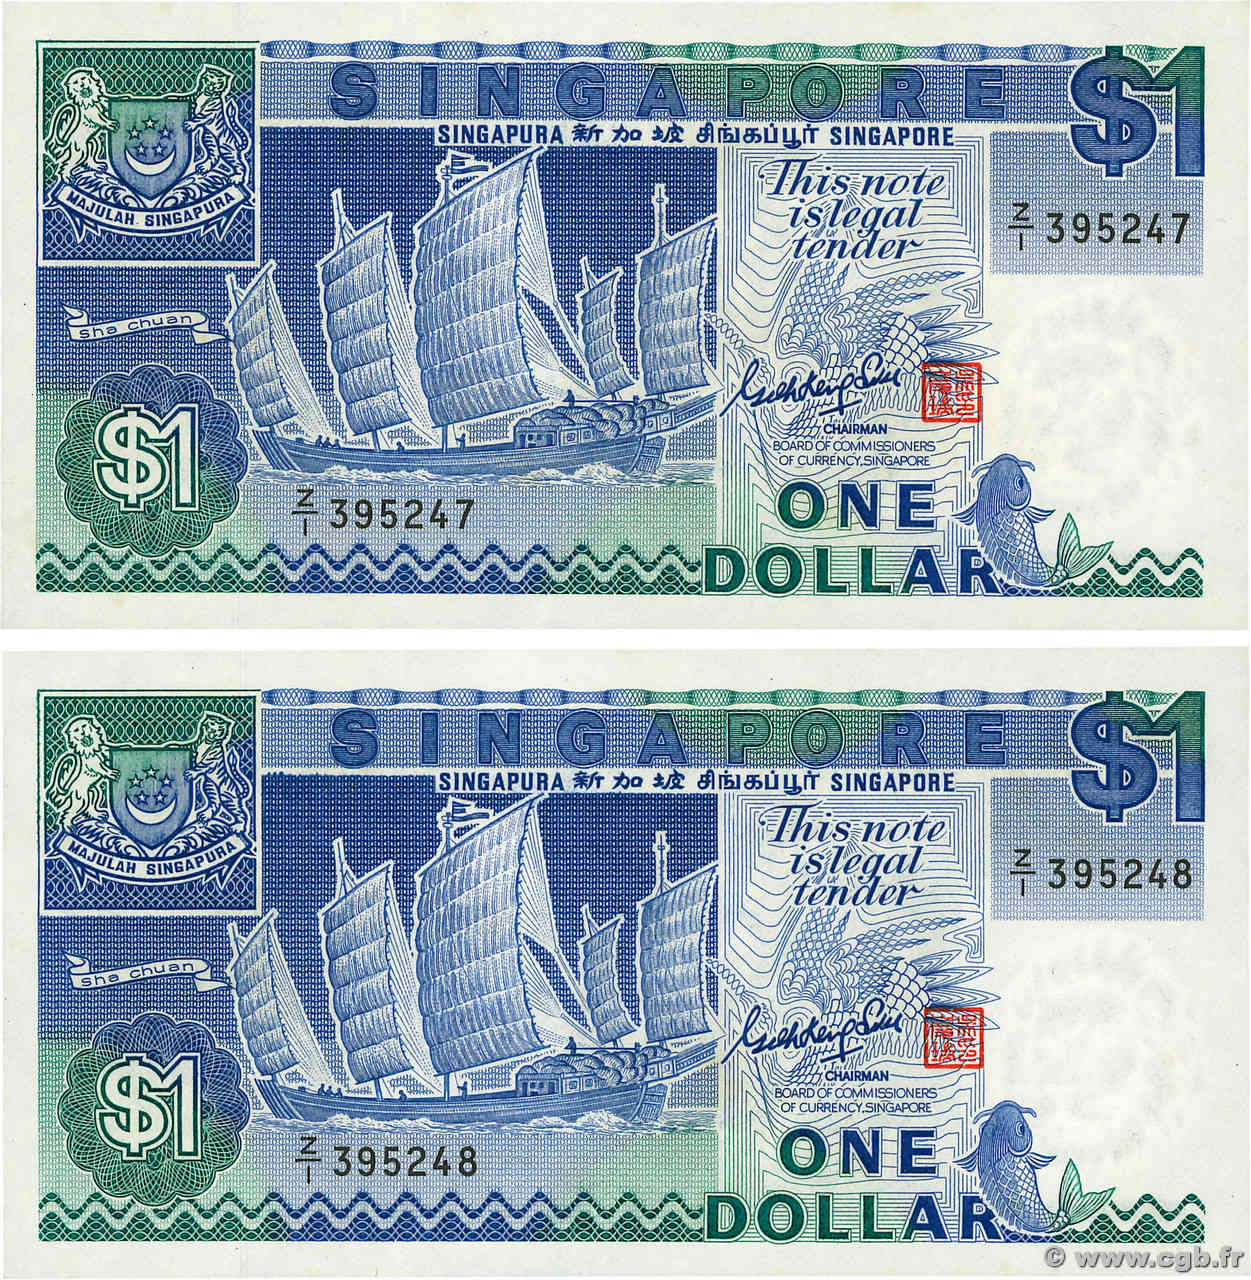 1 Dollar Remplacement SINGAPORE  1987 P.18a UNC